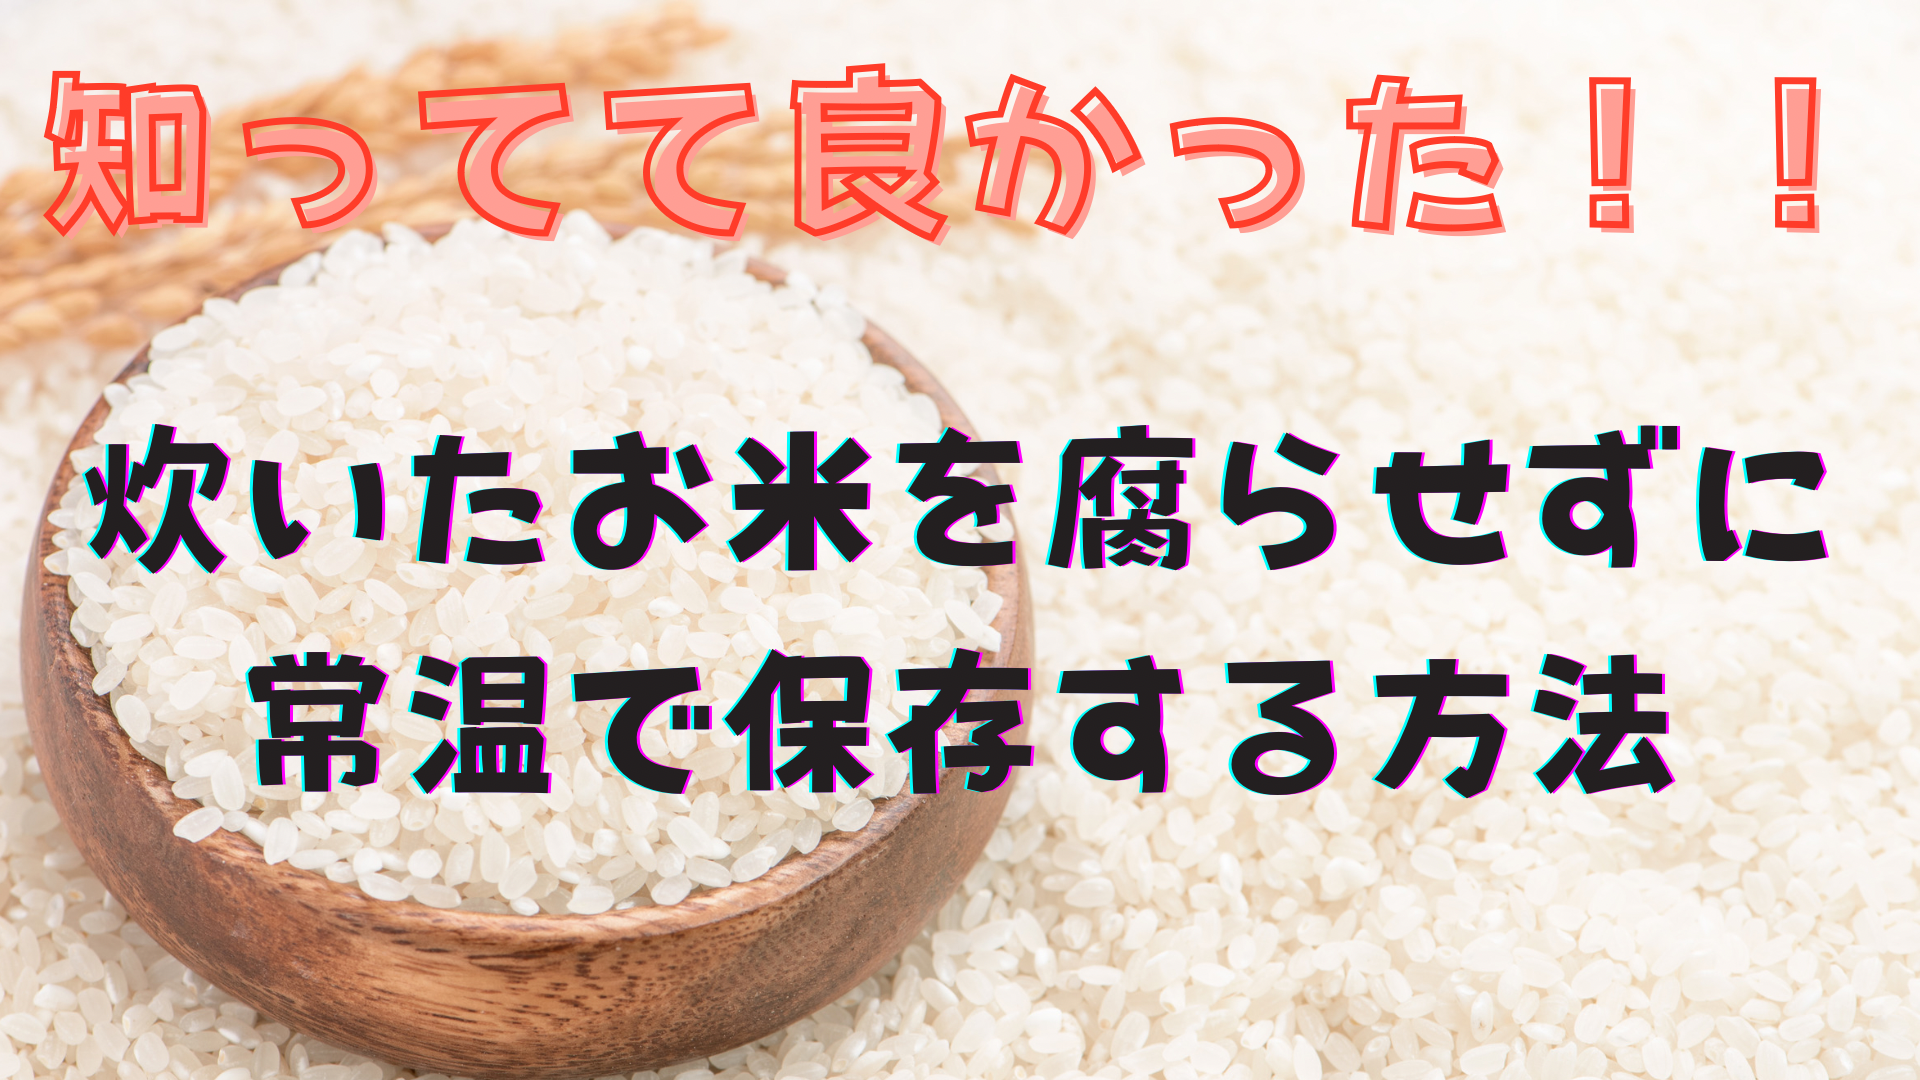 知ってて良かった!!炊いたお米を腐らせず常温で保存する方法